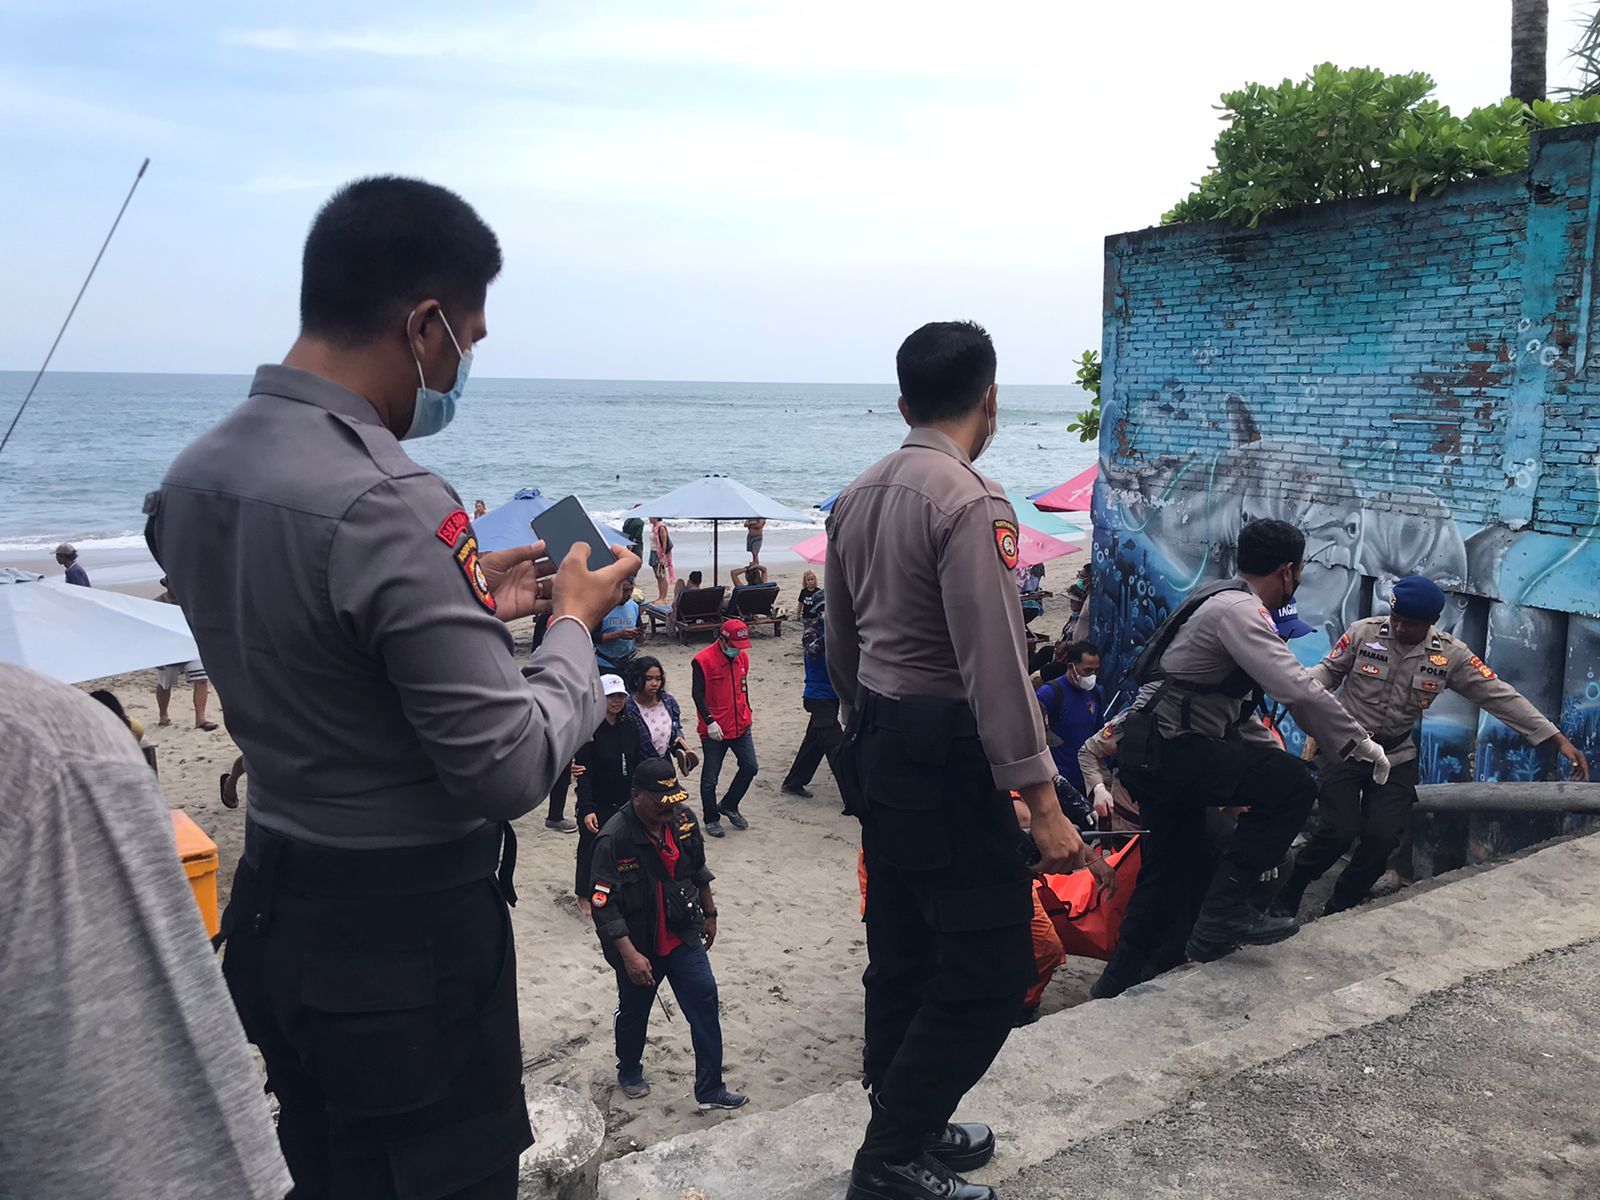 Mayat seorang pria ditemukan di Pantai Batu Mejan, Bali.